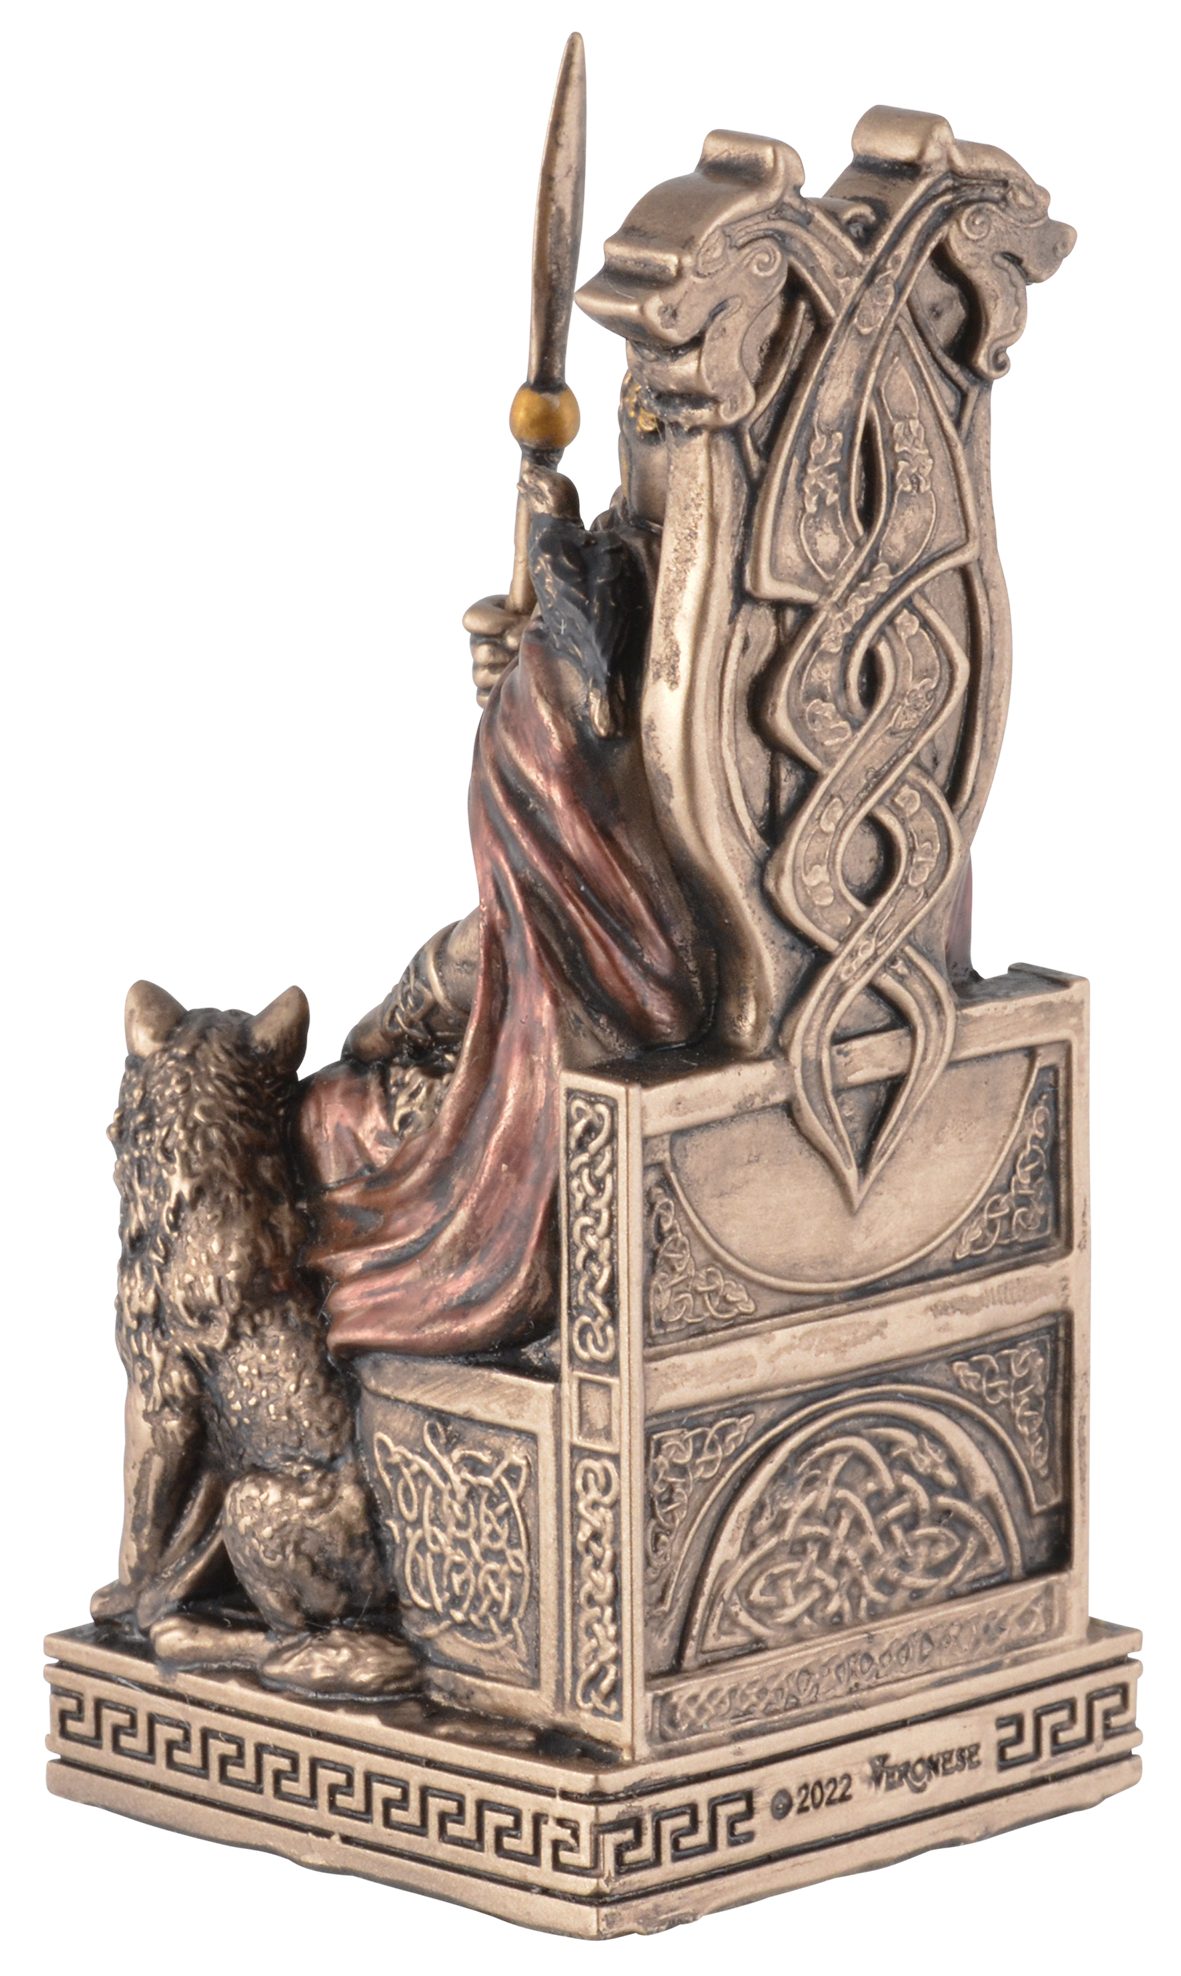 Vogler direct Gott Miniatur, Odin, ca. 4x4x9cm Dekofigur bronzefarben/coloriert, Gmbh Größe: Veronesedesign, Kunststein, L/B/H